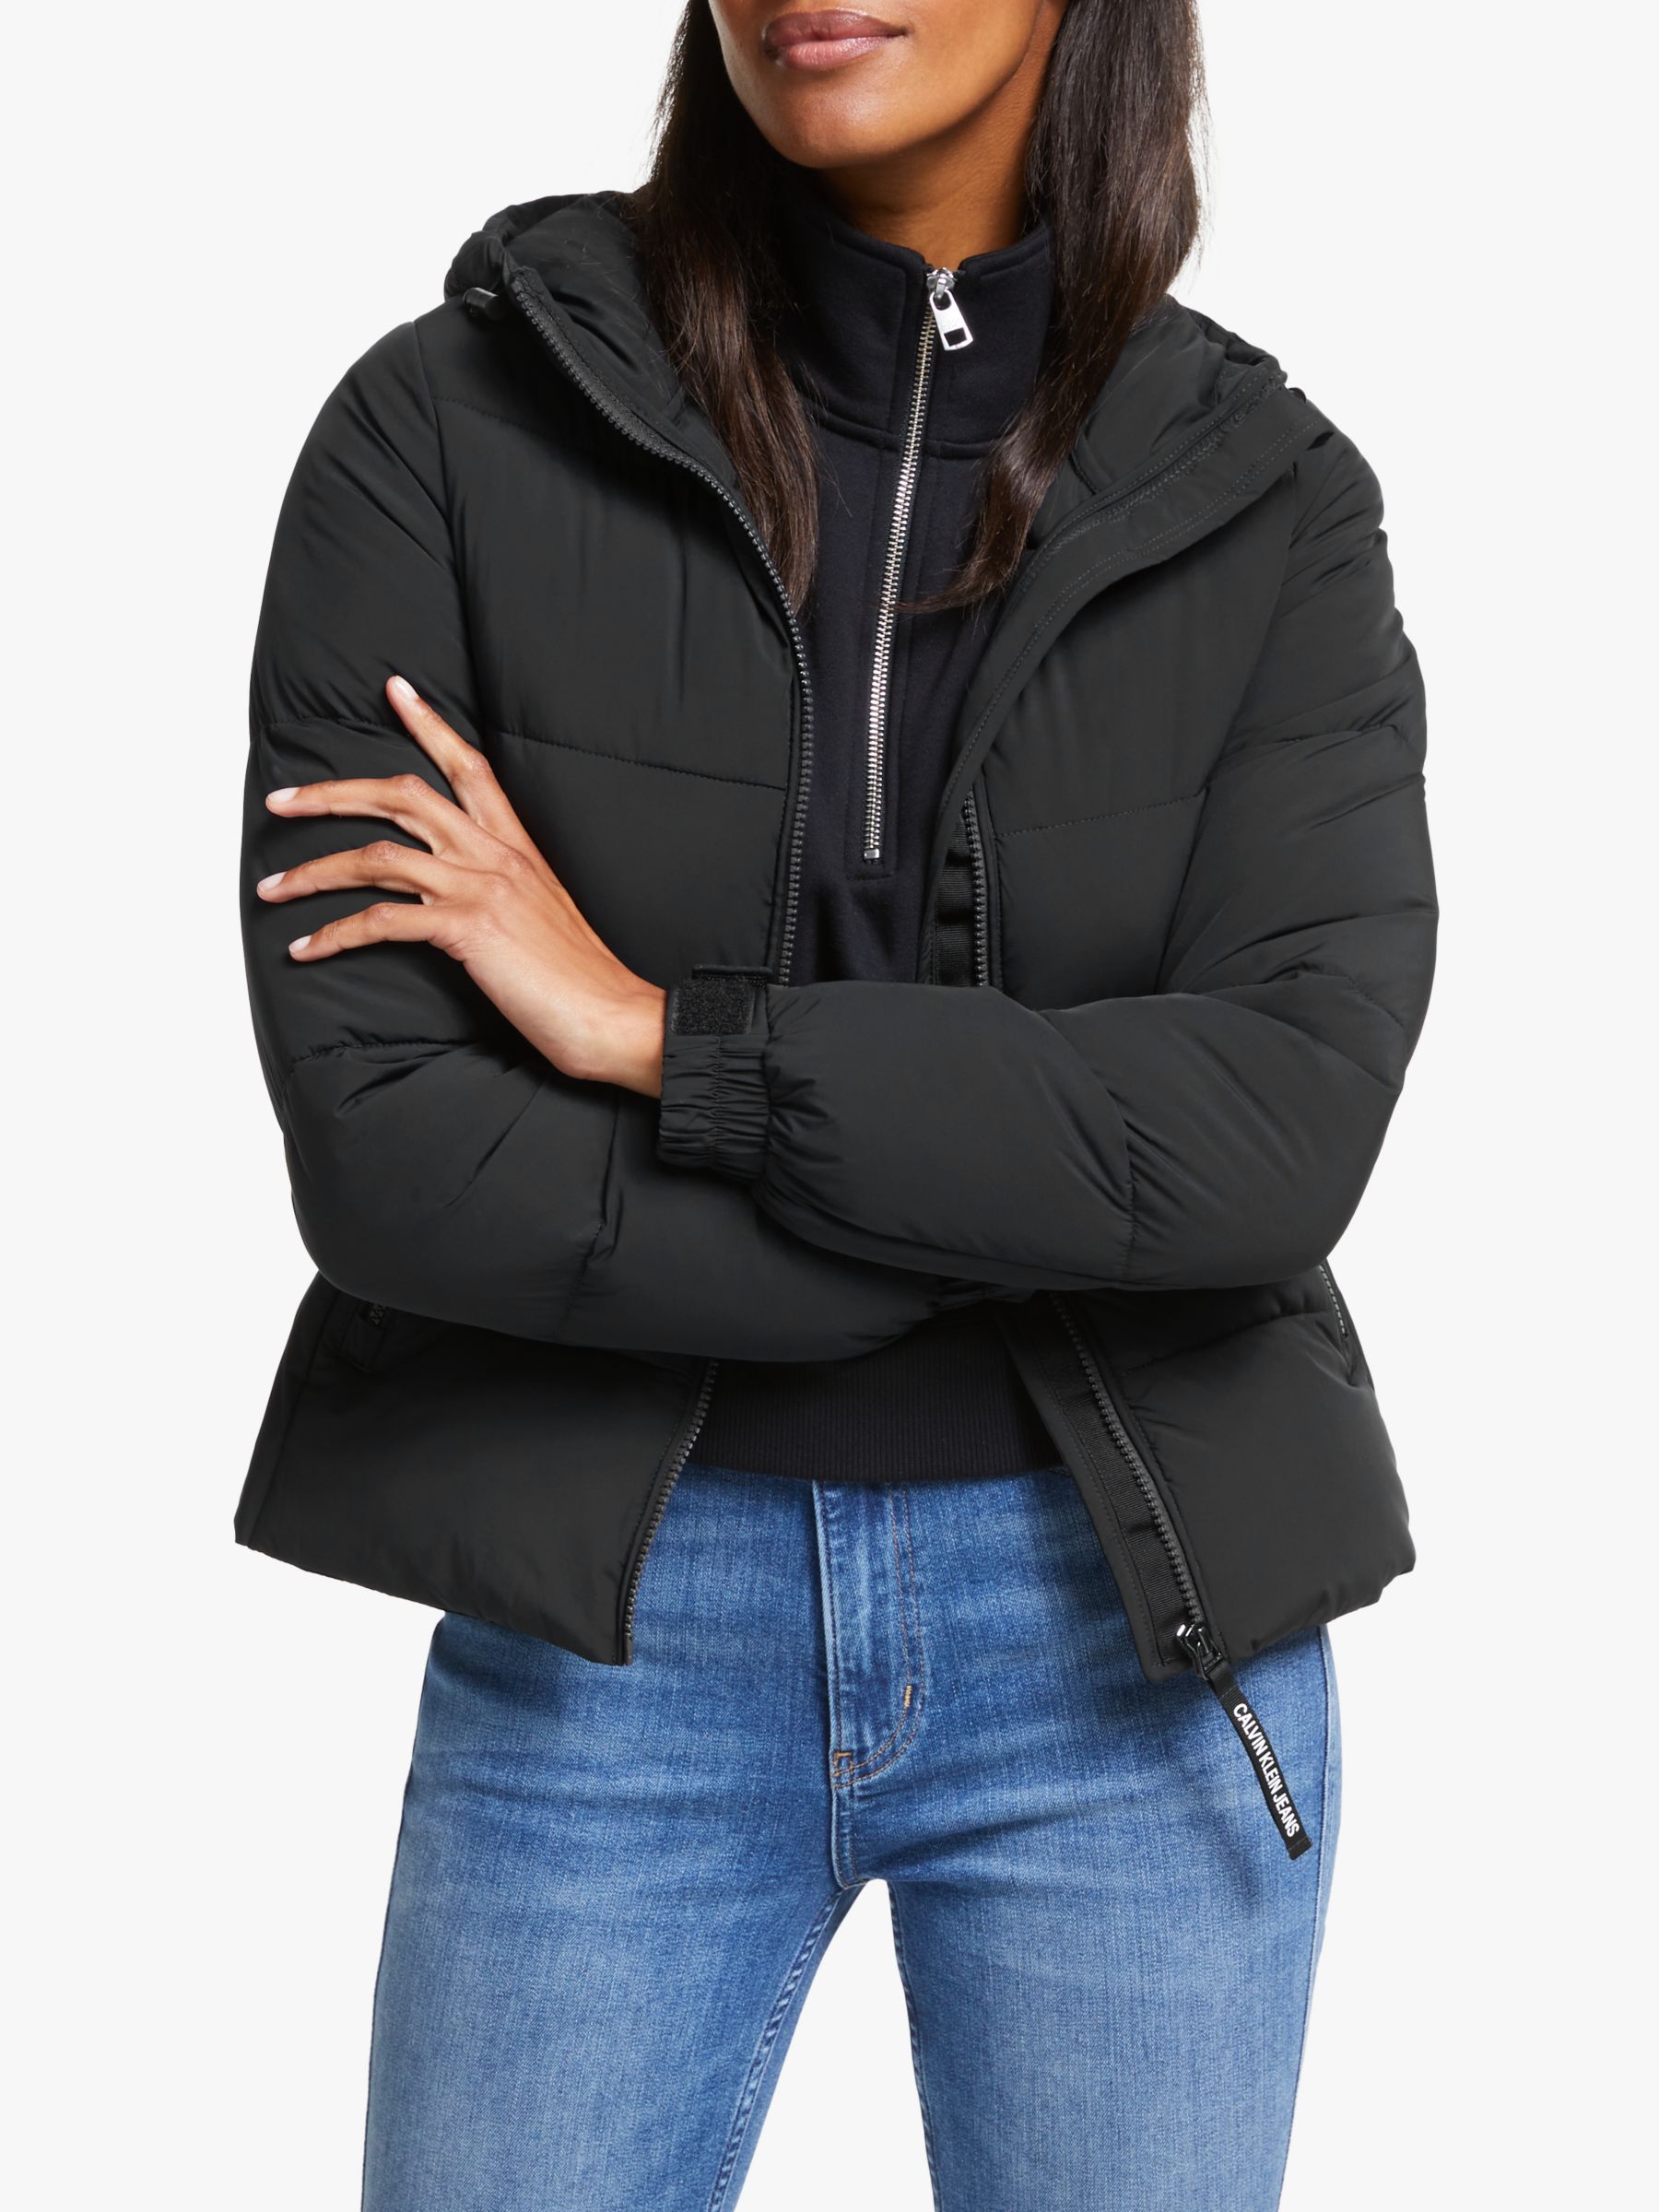 calvin klein jean jacket black